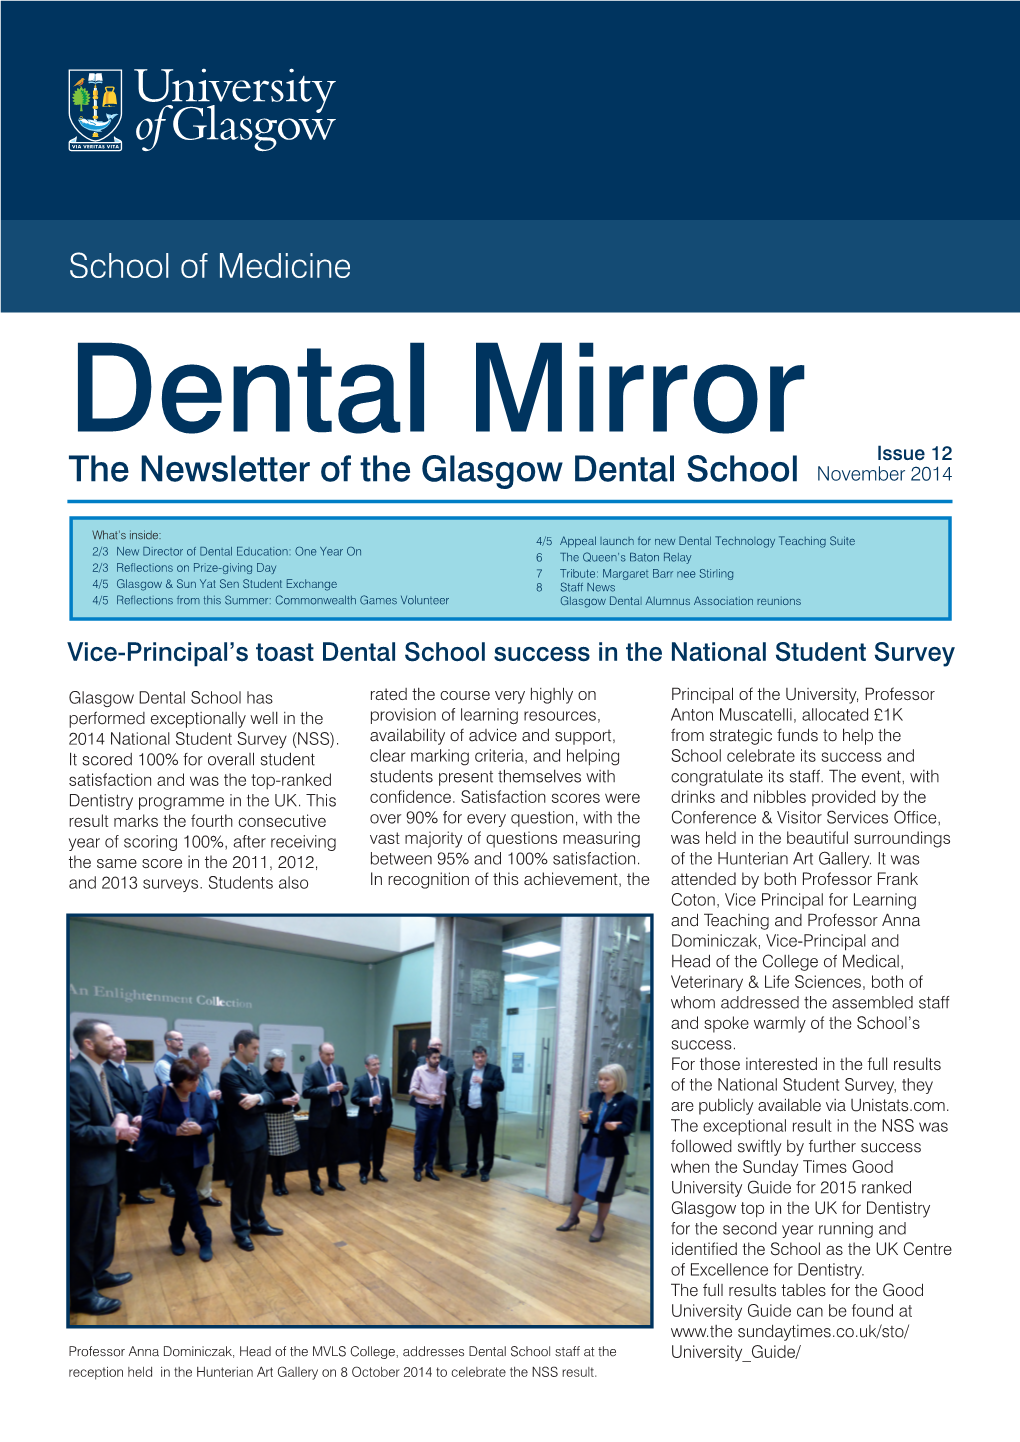 The Newsletter of the Glasgow Dental School November 2014